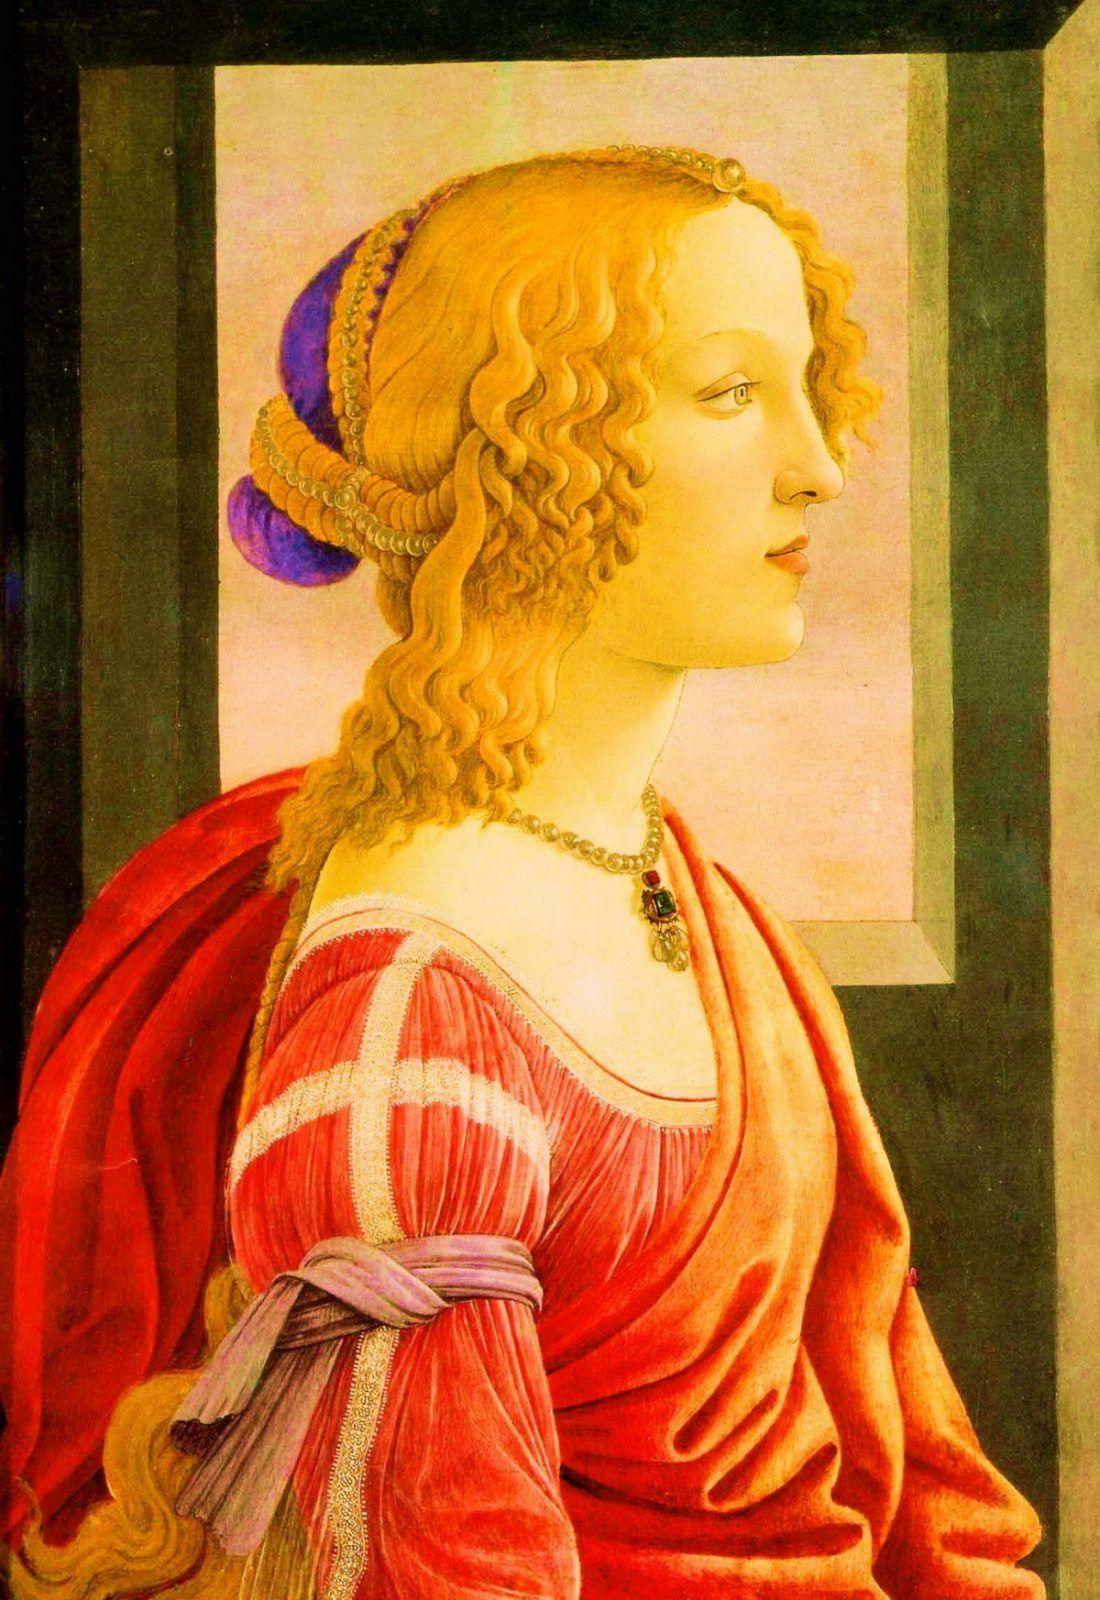 «Портрет молодой женщины» — картина живописца тосканской школы Сандро Боттичелли, написанная в 1476-1480 гг. Авторство Боттичелли предположительно. Картина хранится в Берлинской галерее…